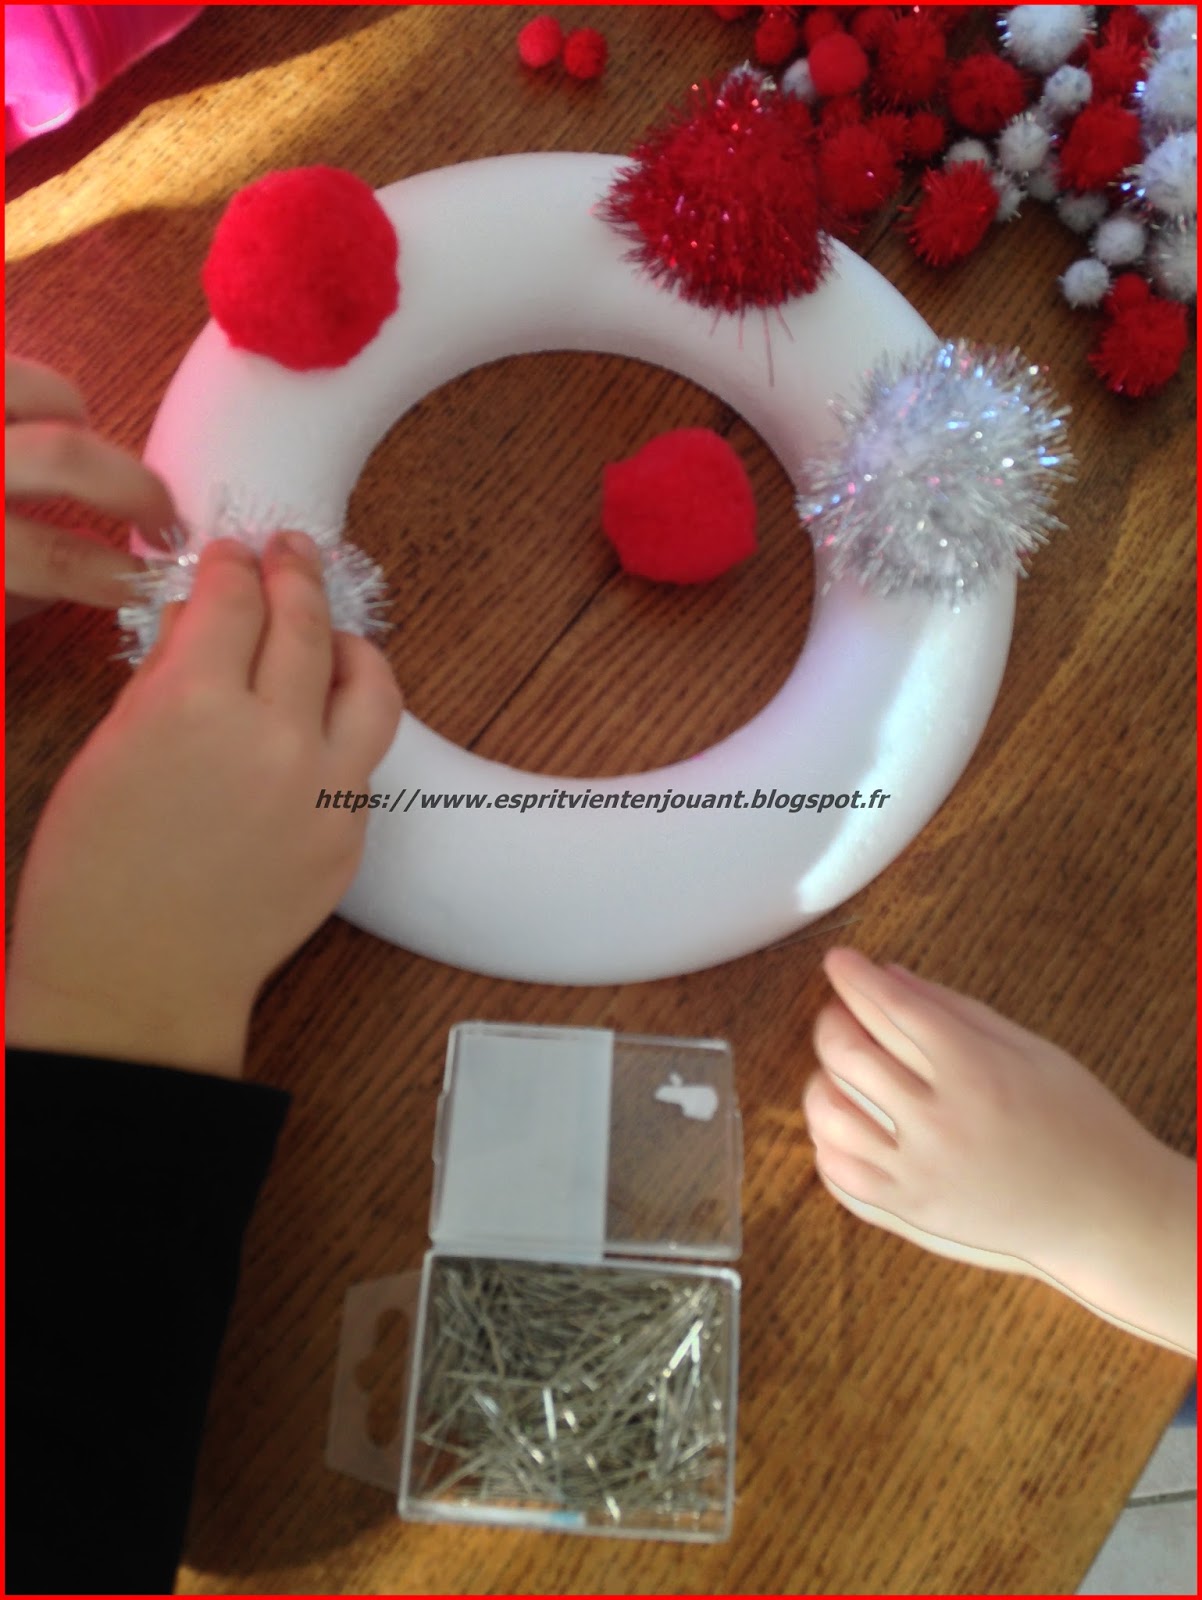 L'esprit vient en jouant: [Activité enfants] Décorer une couronne de Noël  avec des pompons et des épingles (DIY, tuto, activité enfant)